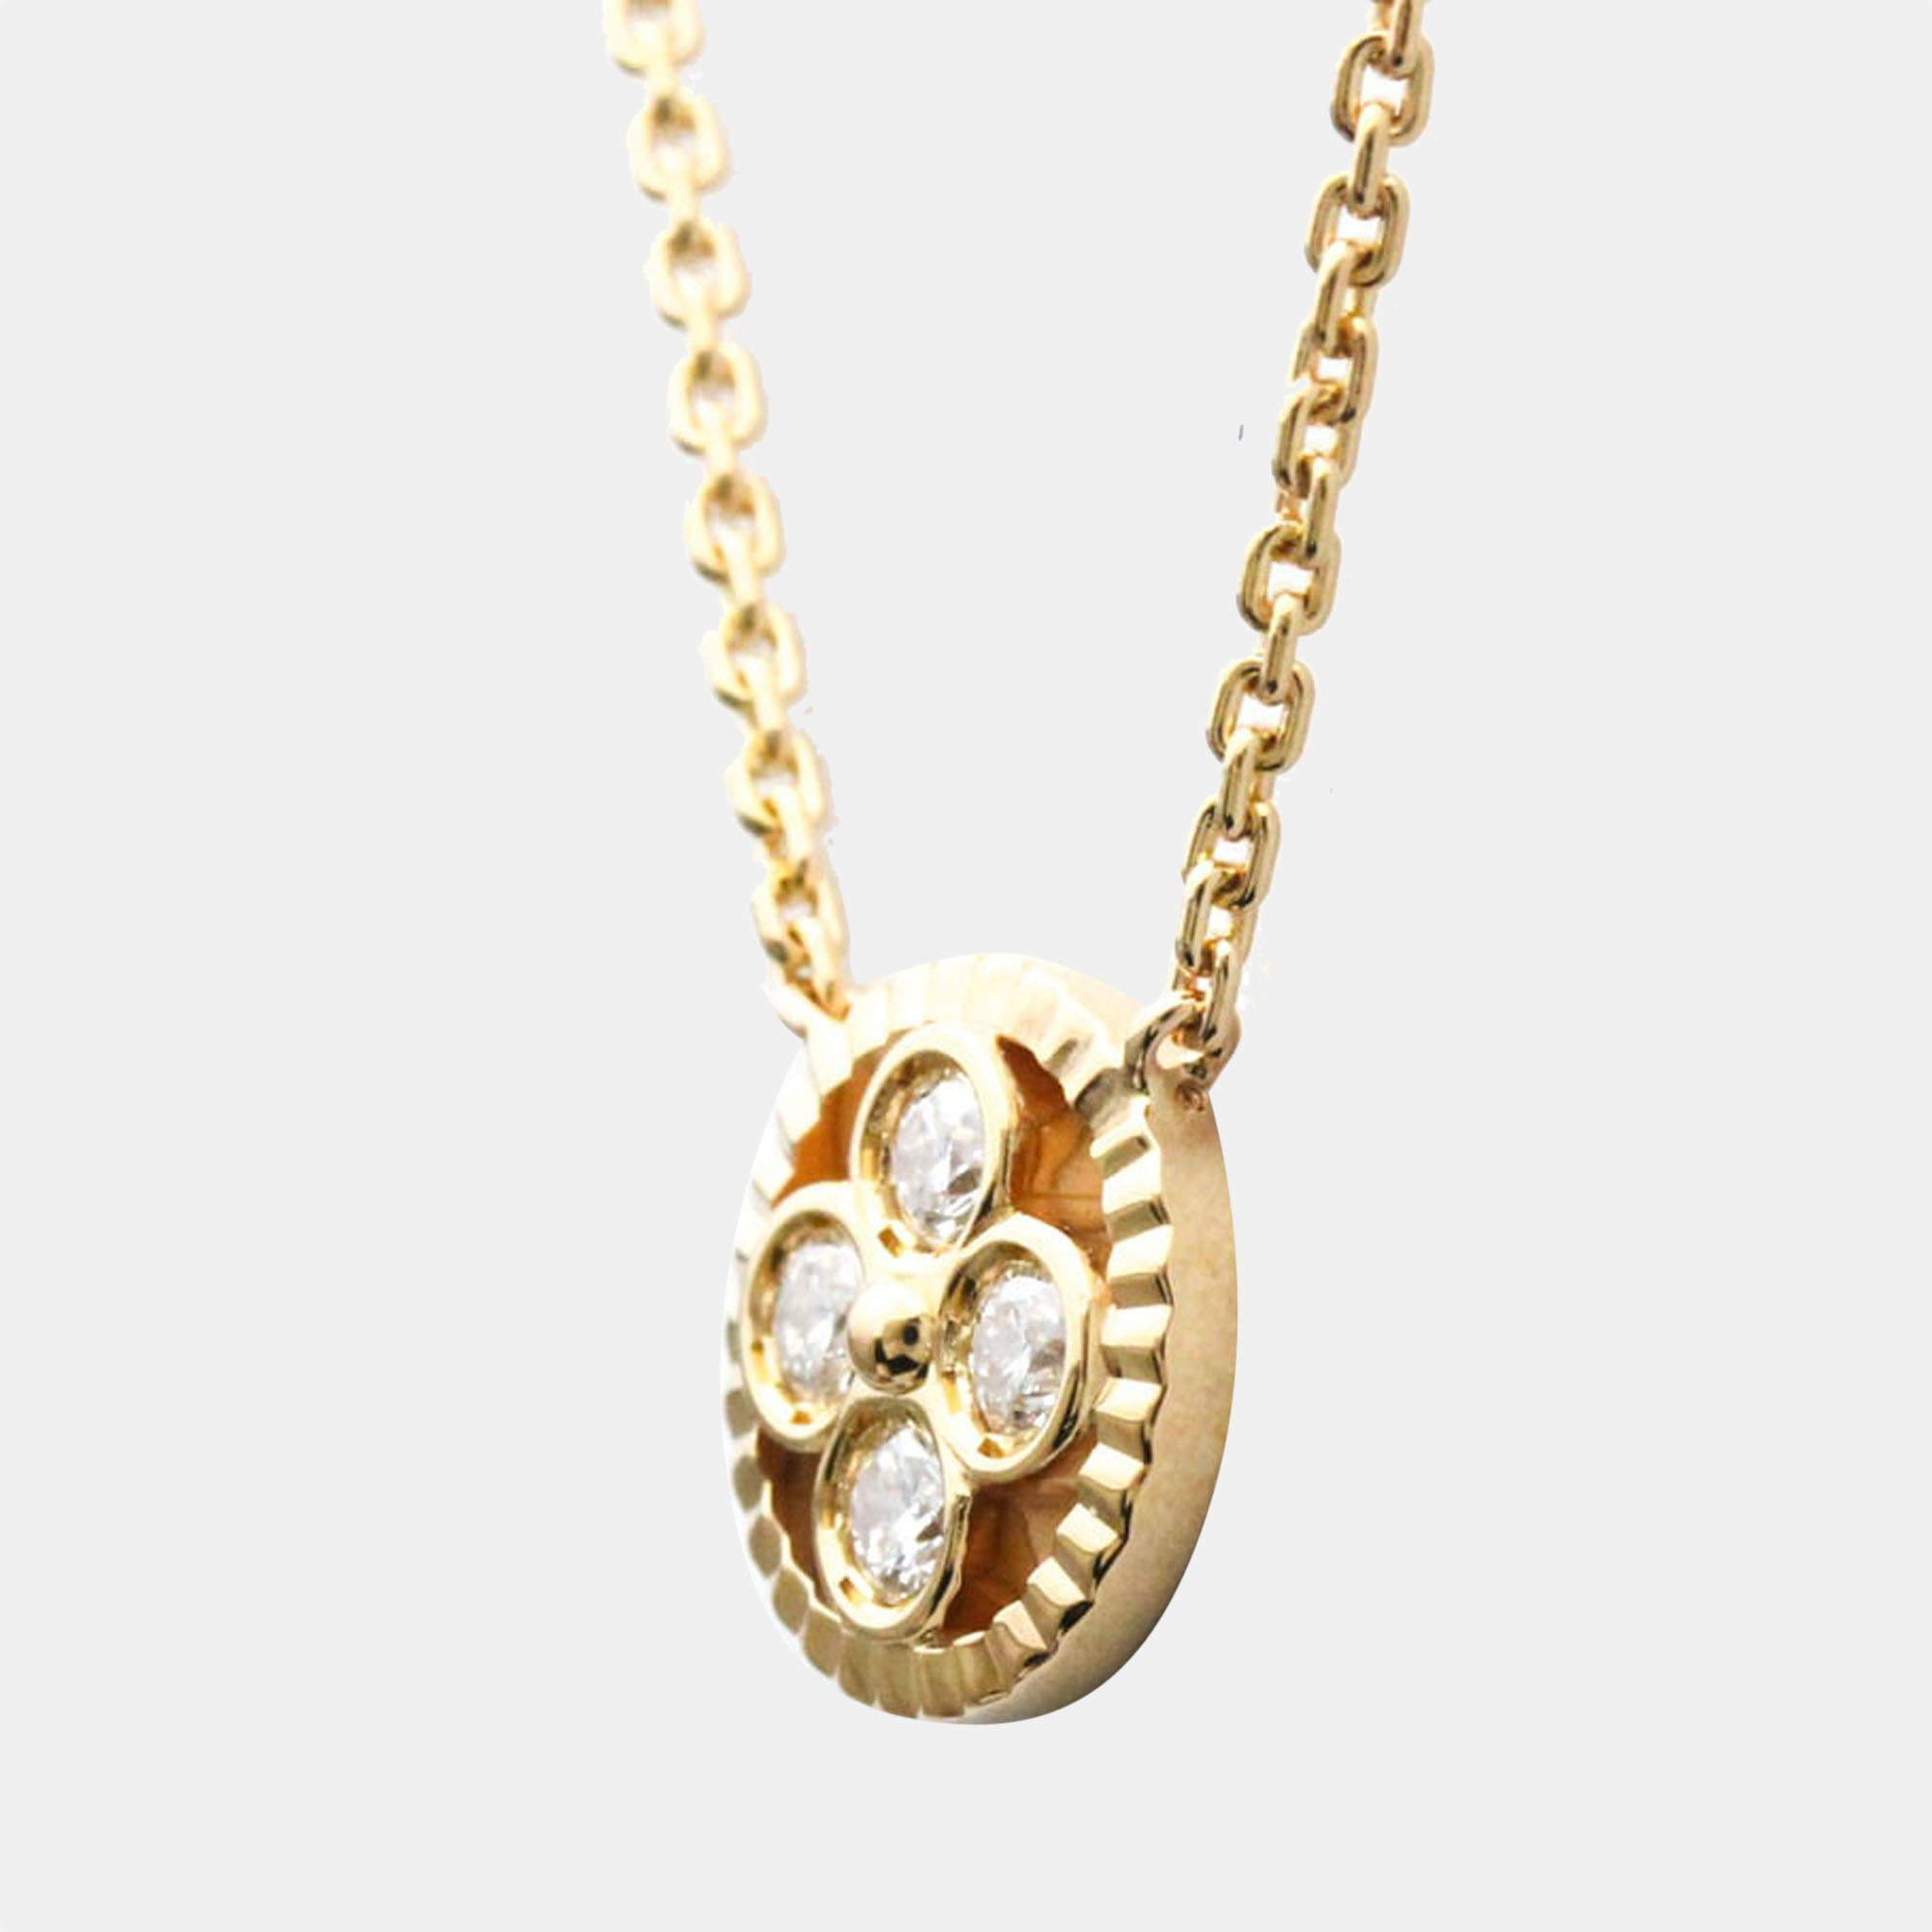 Vintage 18k gold Louis Vuitton pendant with diamonds